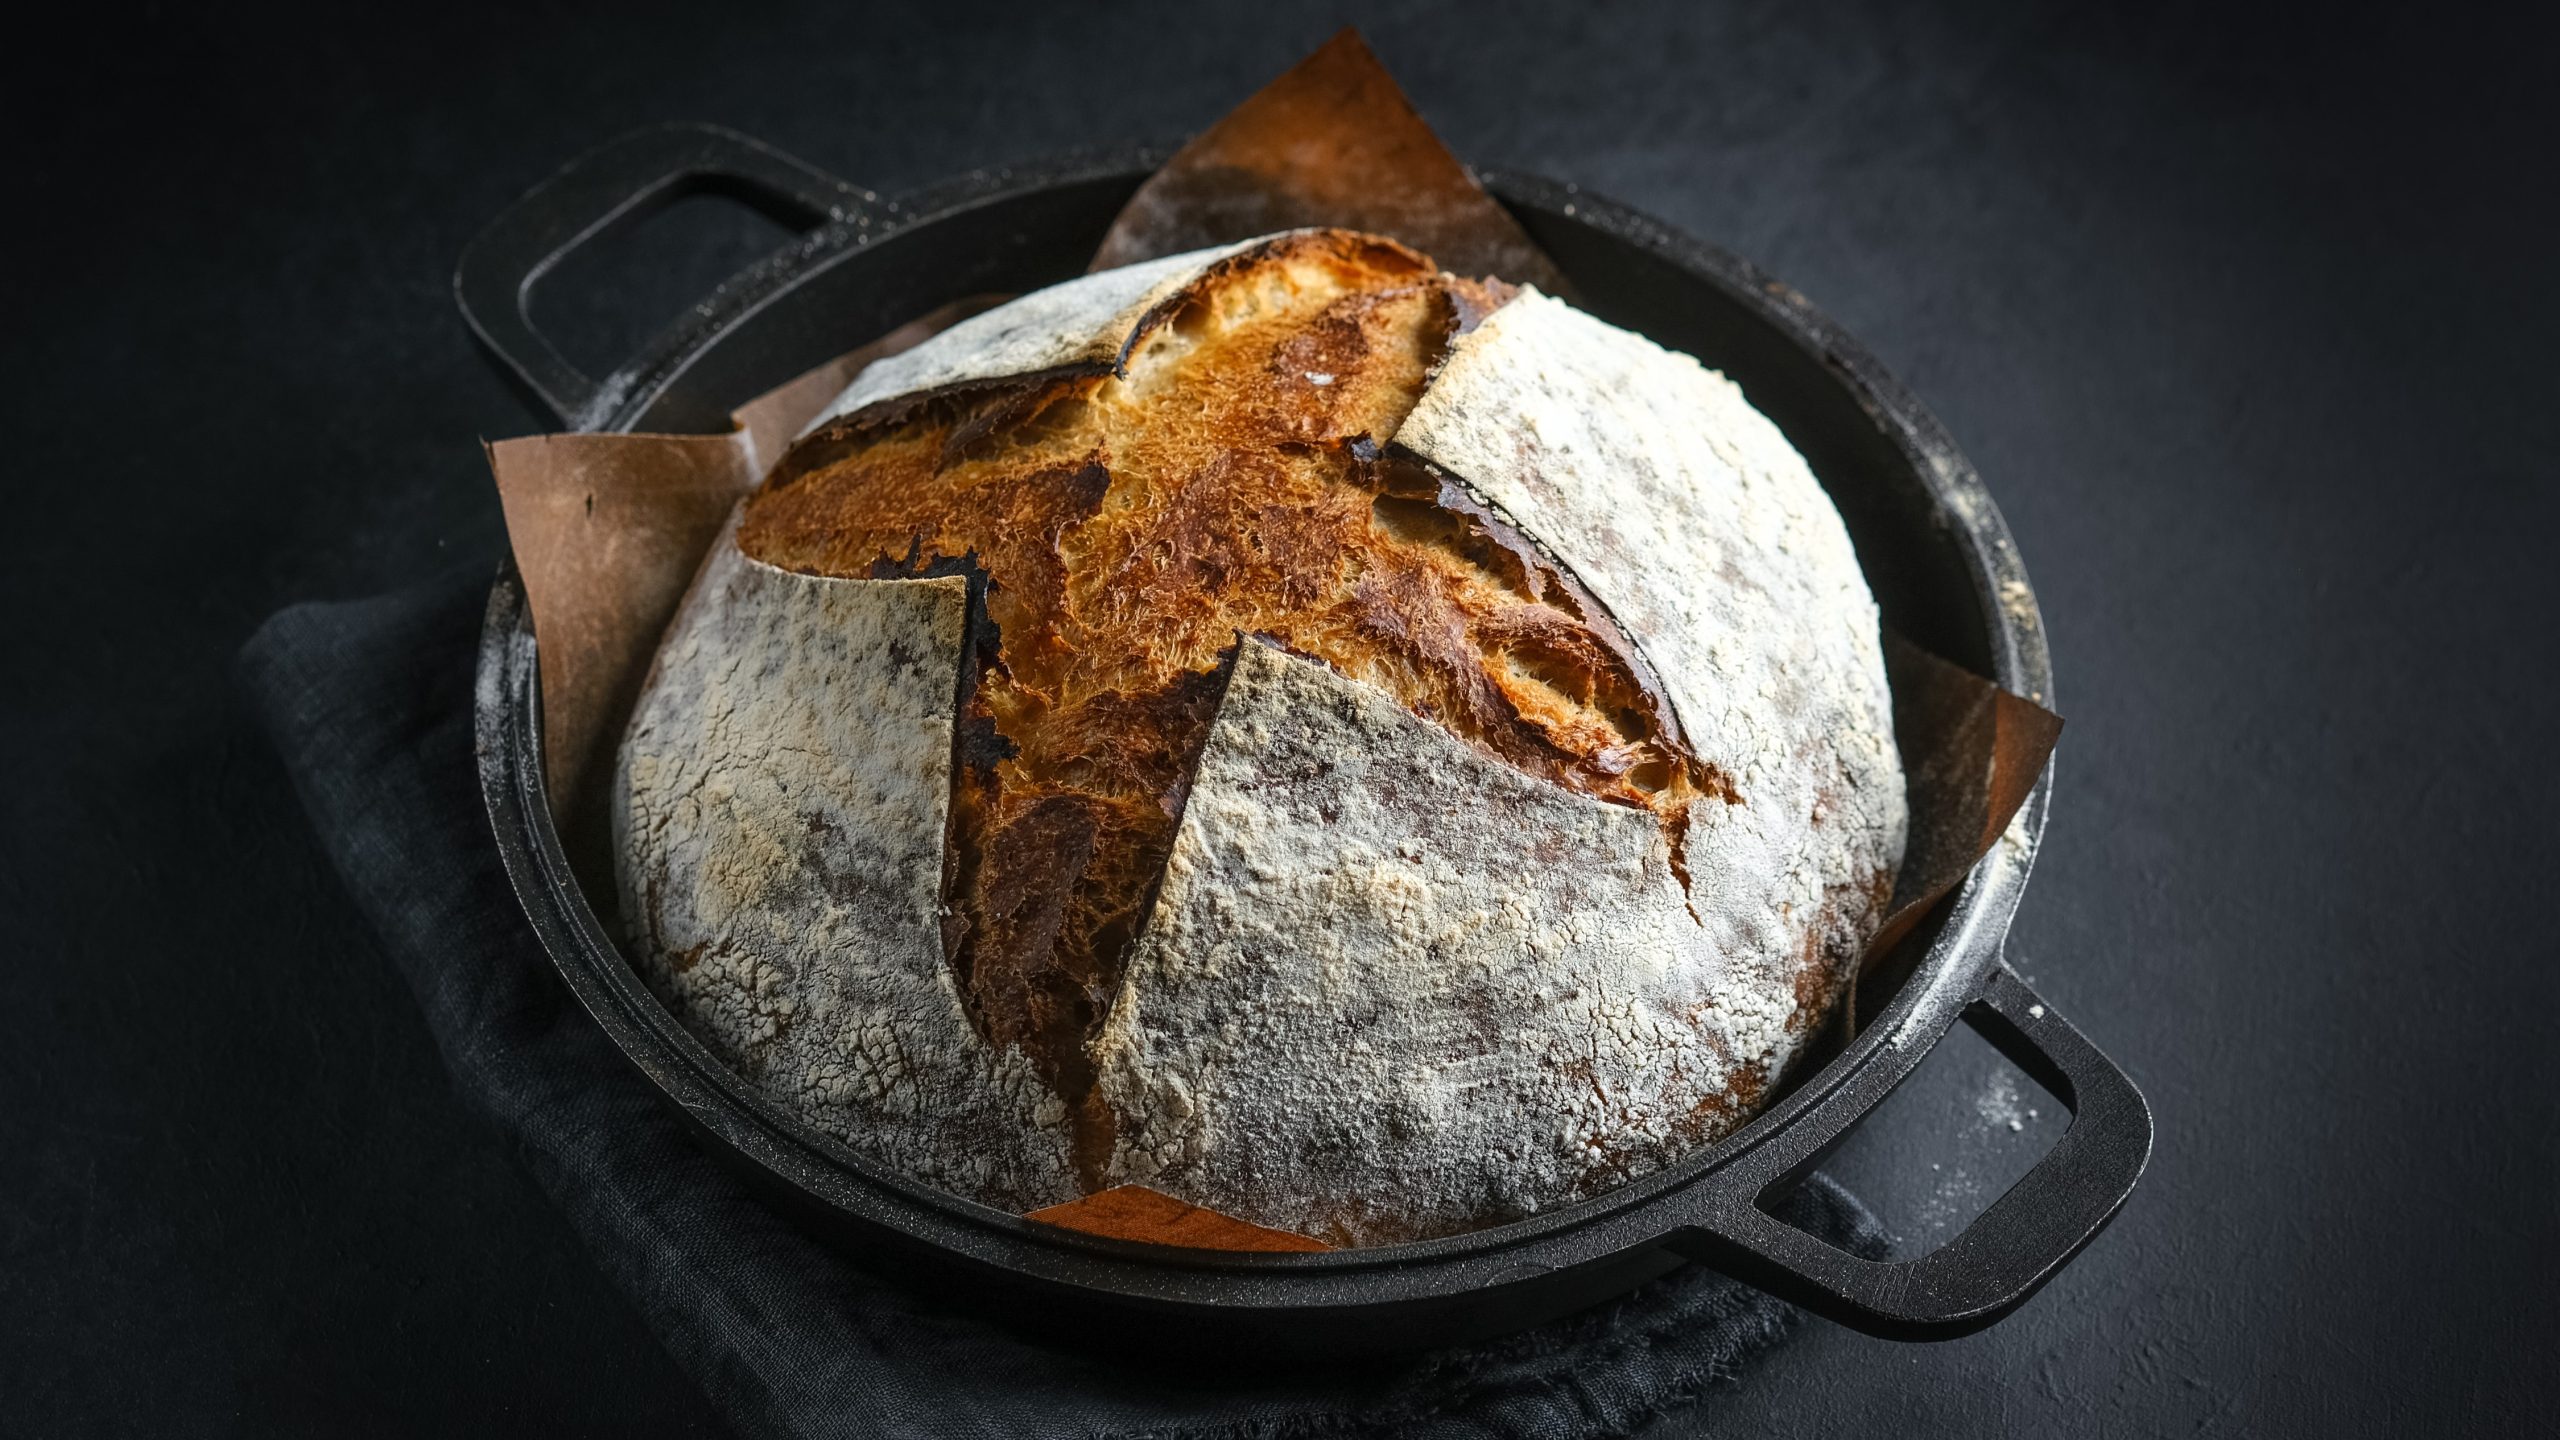 Ein gusseiserner Topf mit dem Brot auf einem schwarzen Tisch mit grauem Tuch. Alles von schräg oben fotografiert.